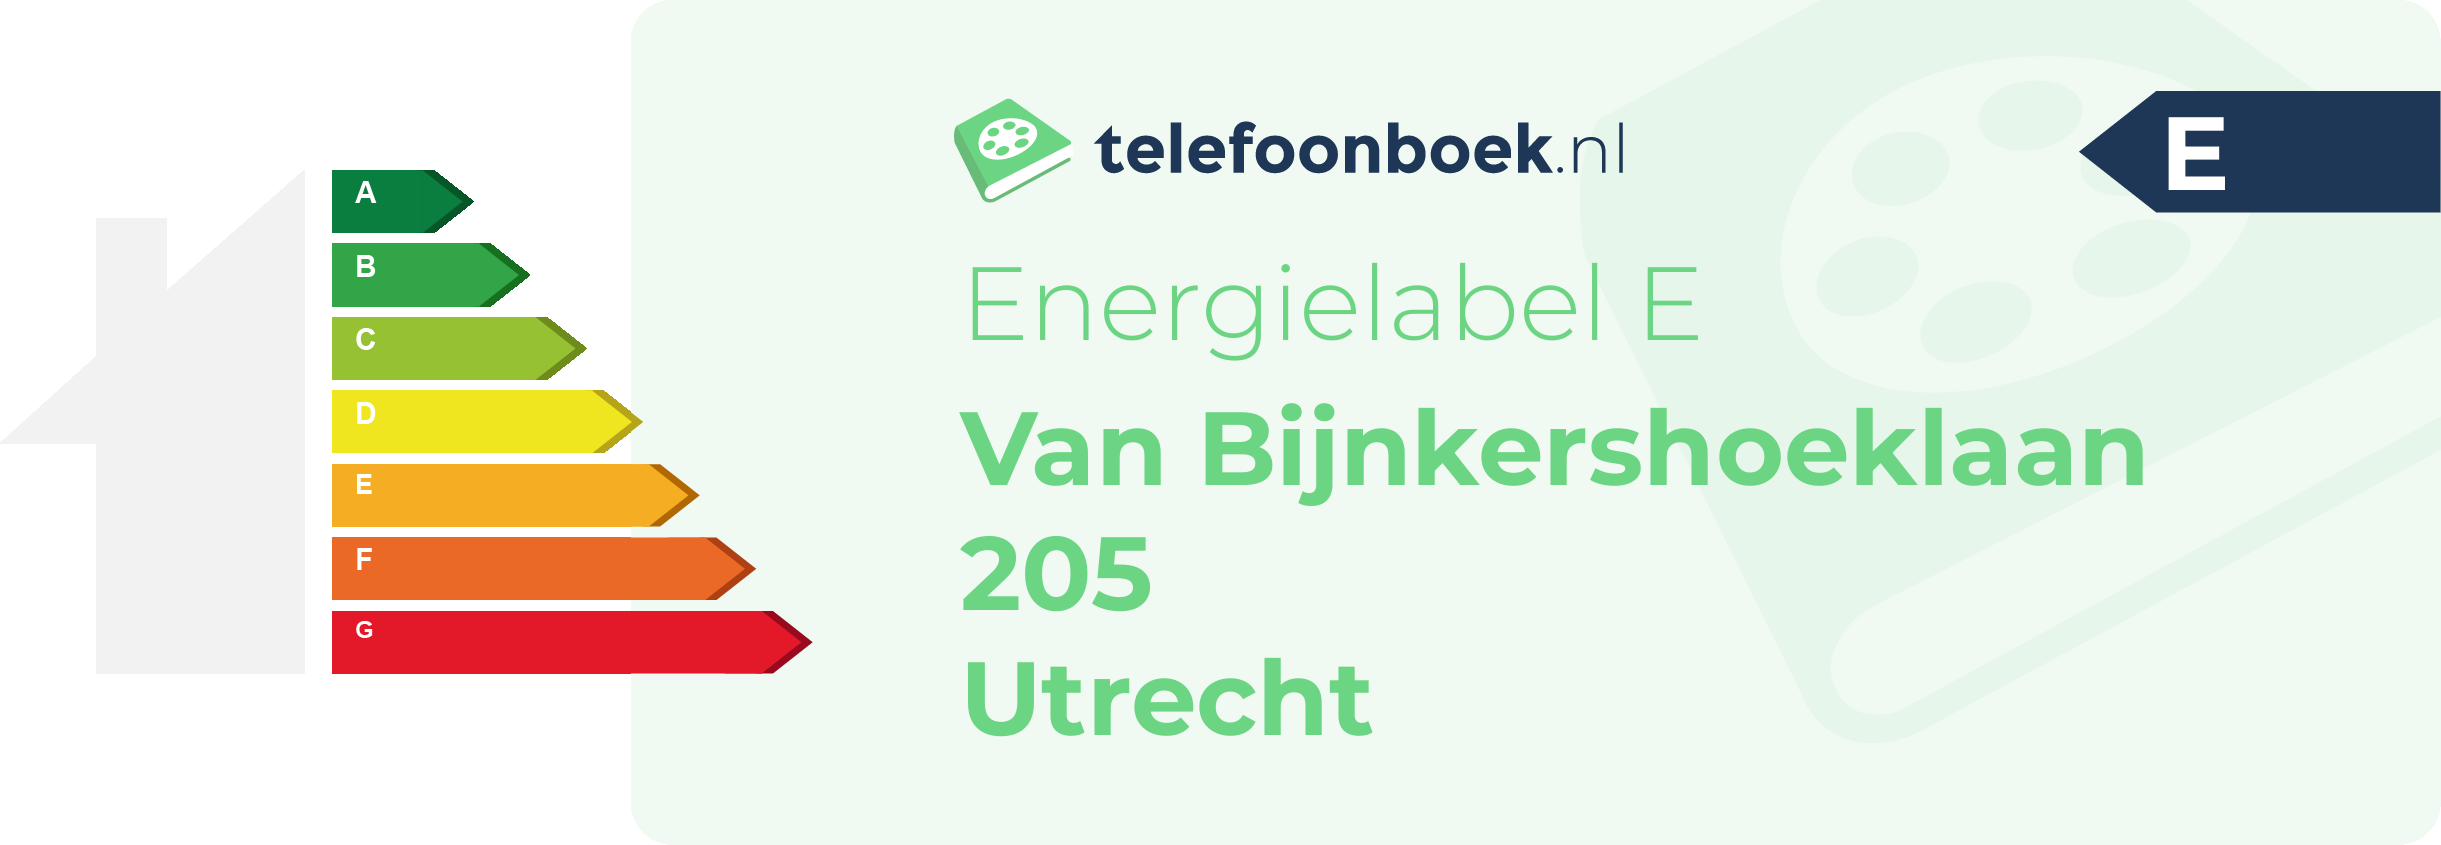 Energielabel Van Bijnkershoeklaan 205 Utrecht